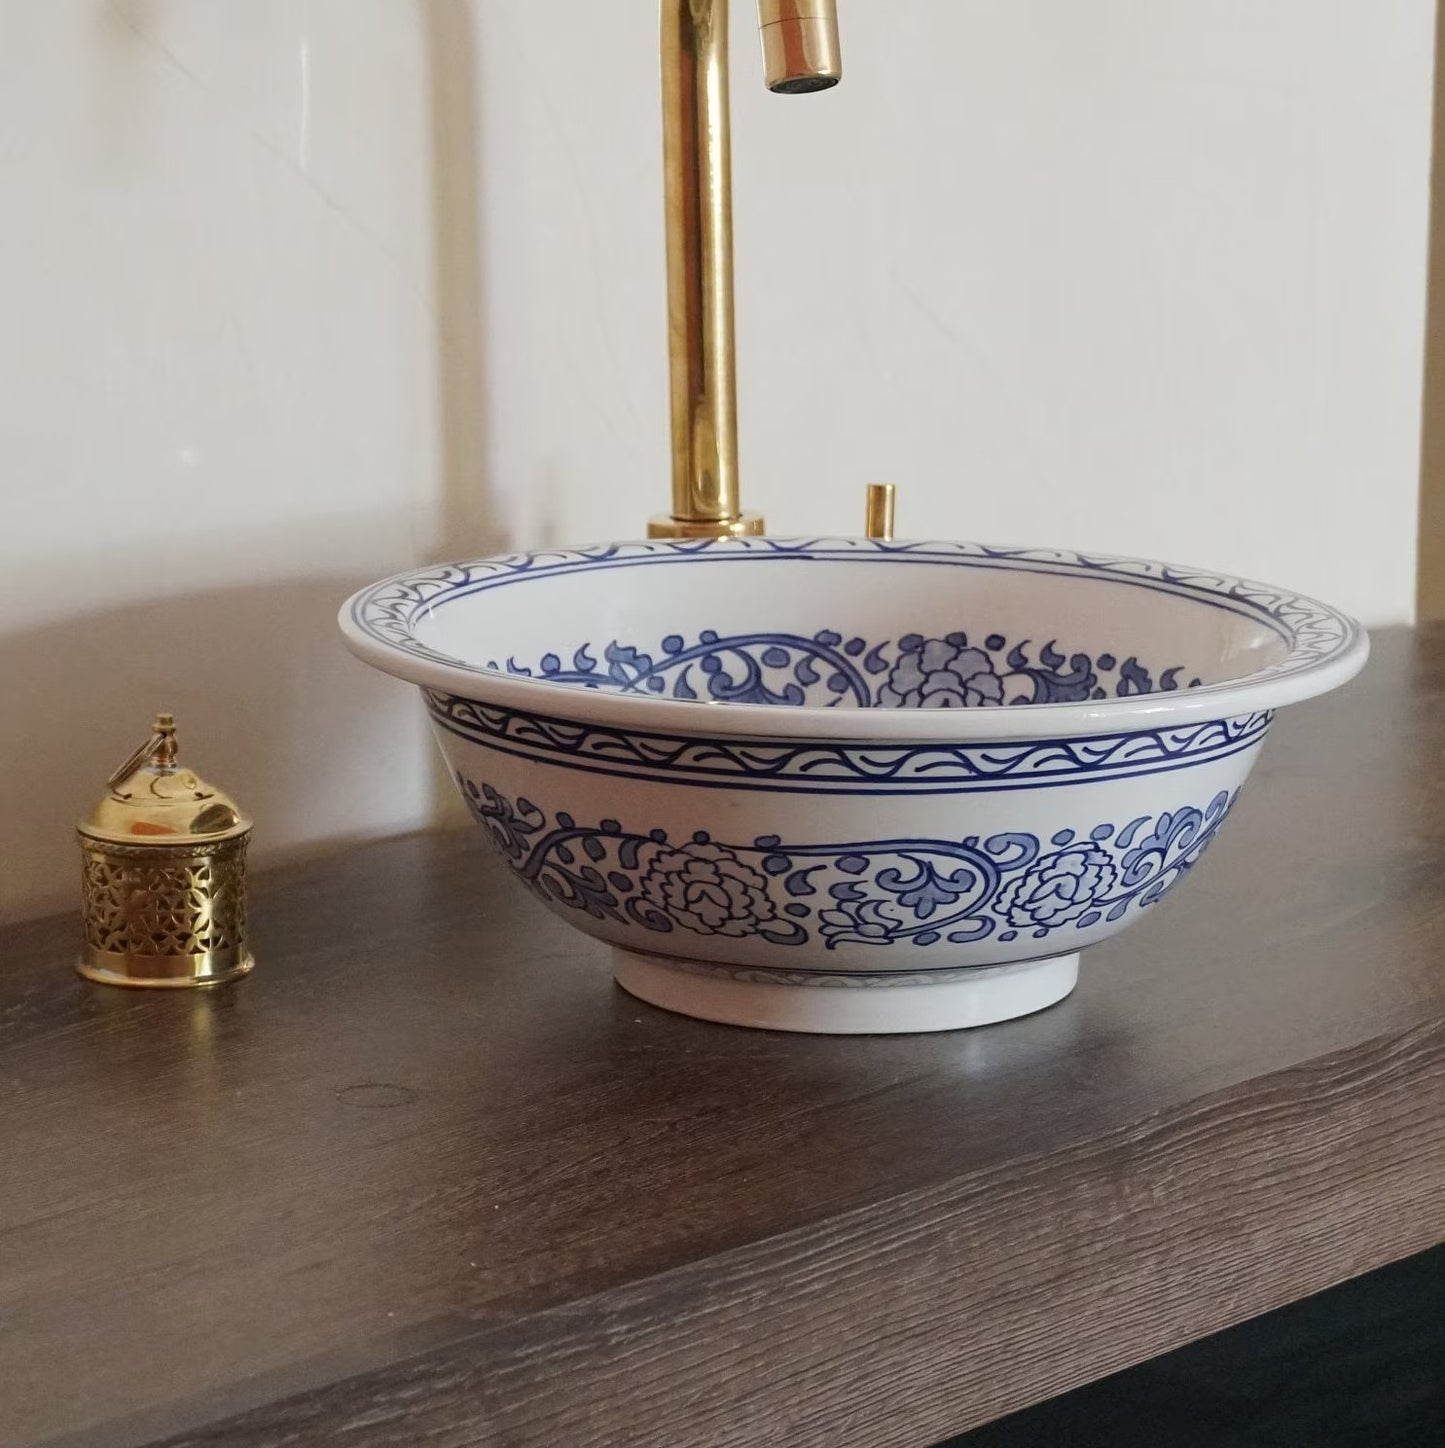 Moroccan sink | moroccan ceramic sink | bathroom sink | moroccan bathroom basin | cloakroom basin | Bleu sink #159